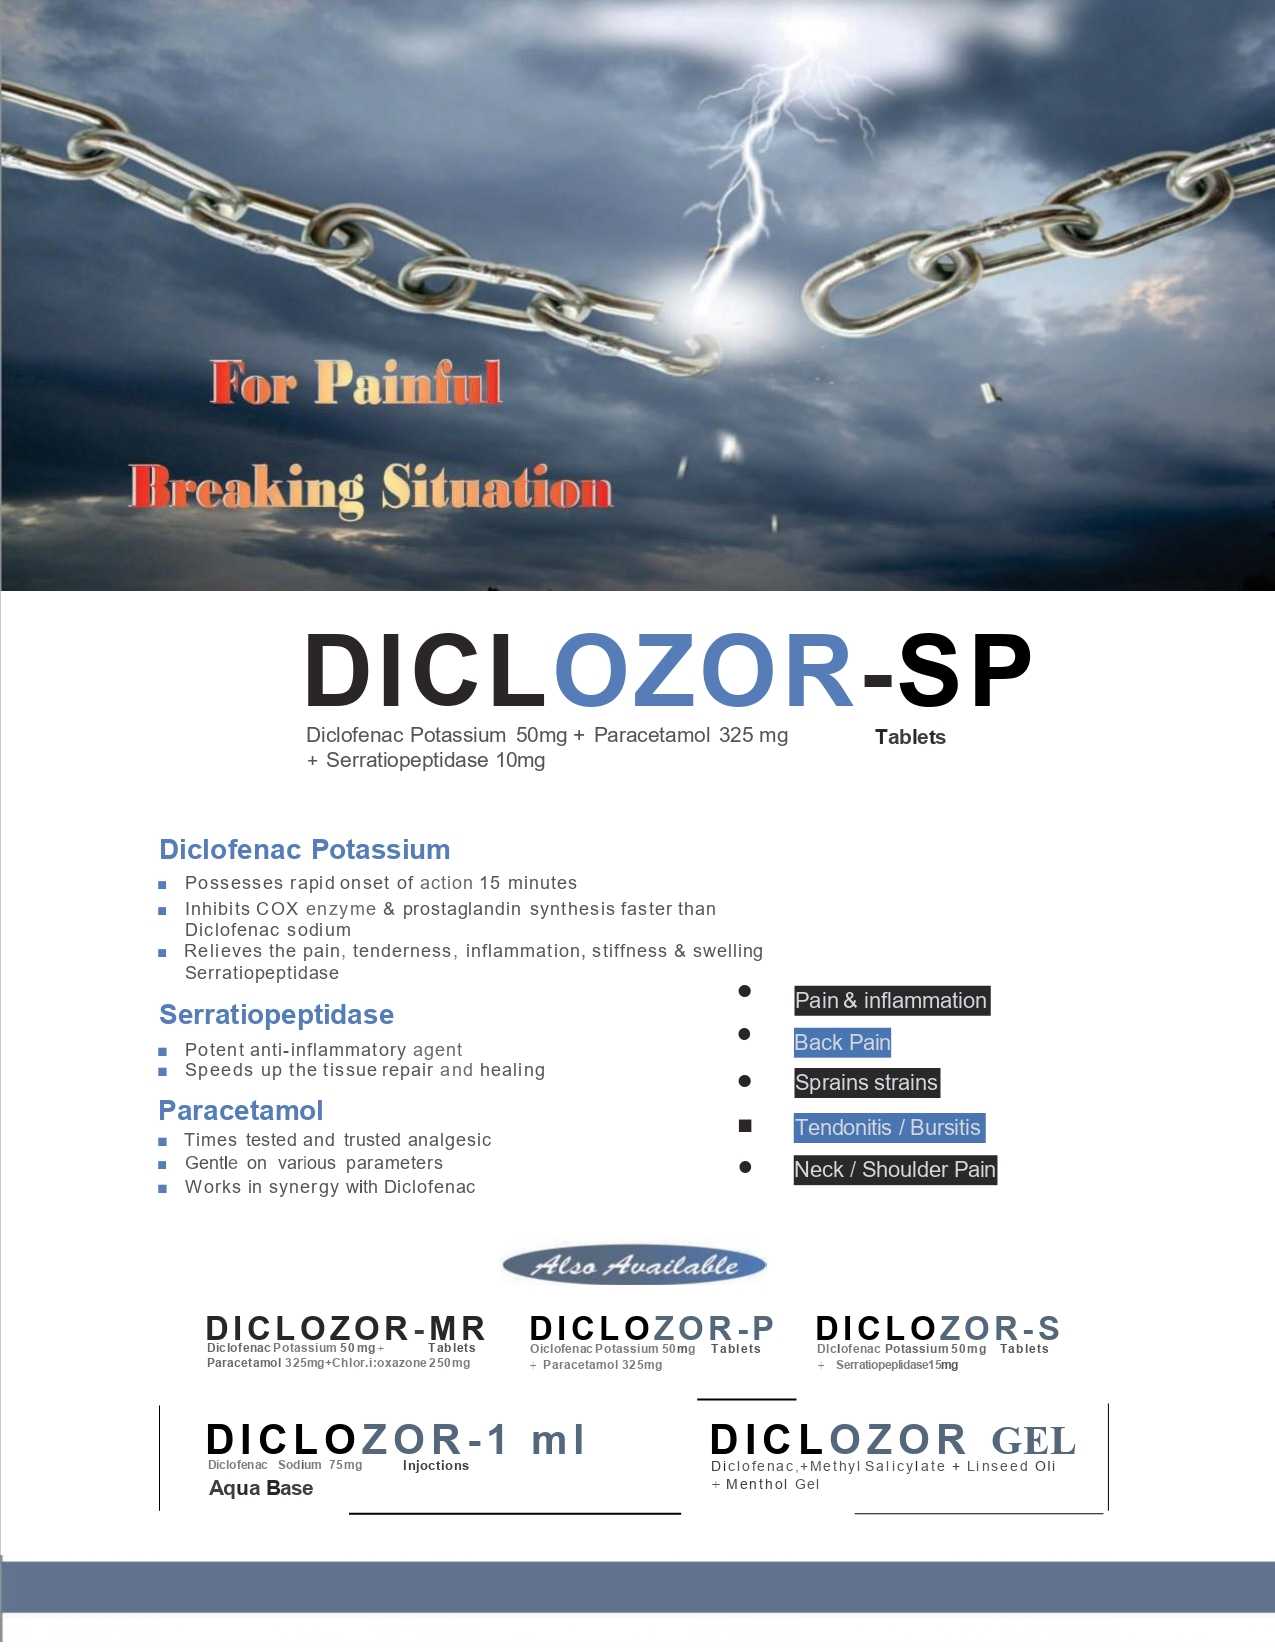 Diclozor-P